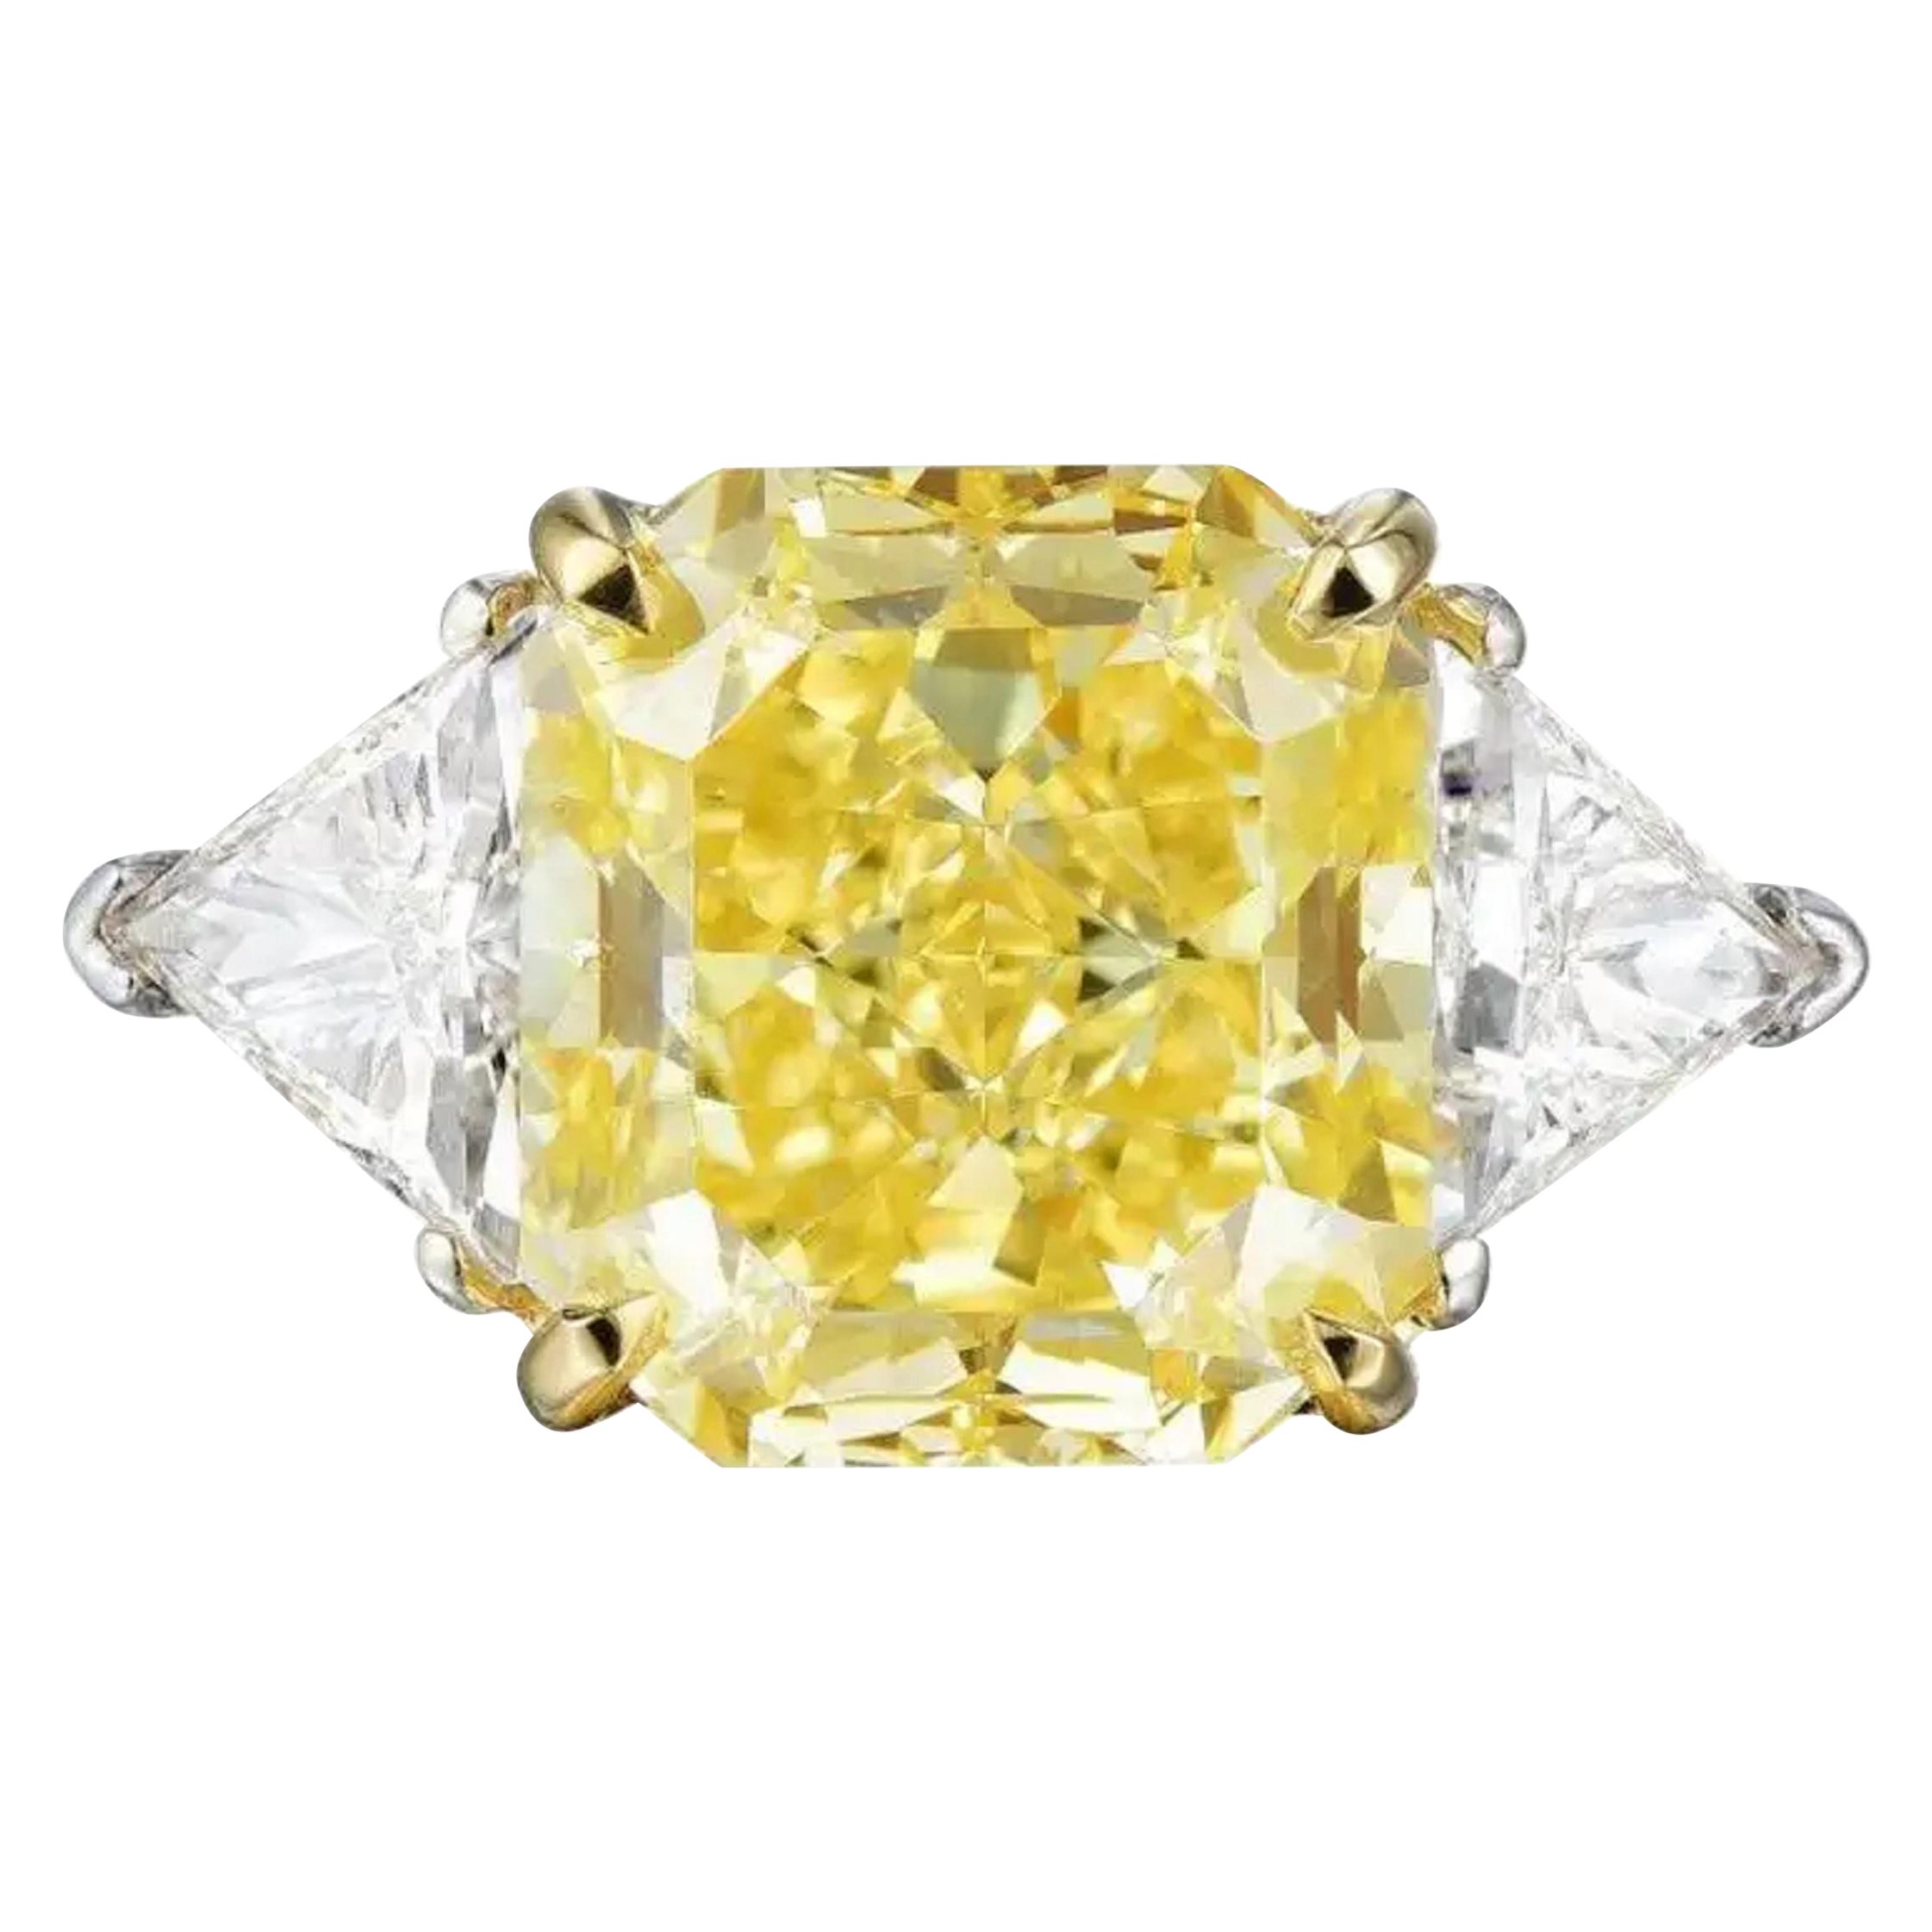 GIA Certified 3 Carat Fancy Yellow Cushion Cut Diamond Ring VS2 Clarity